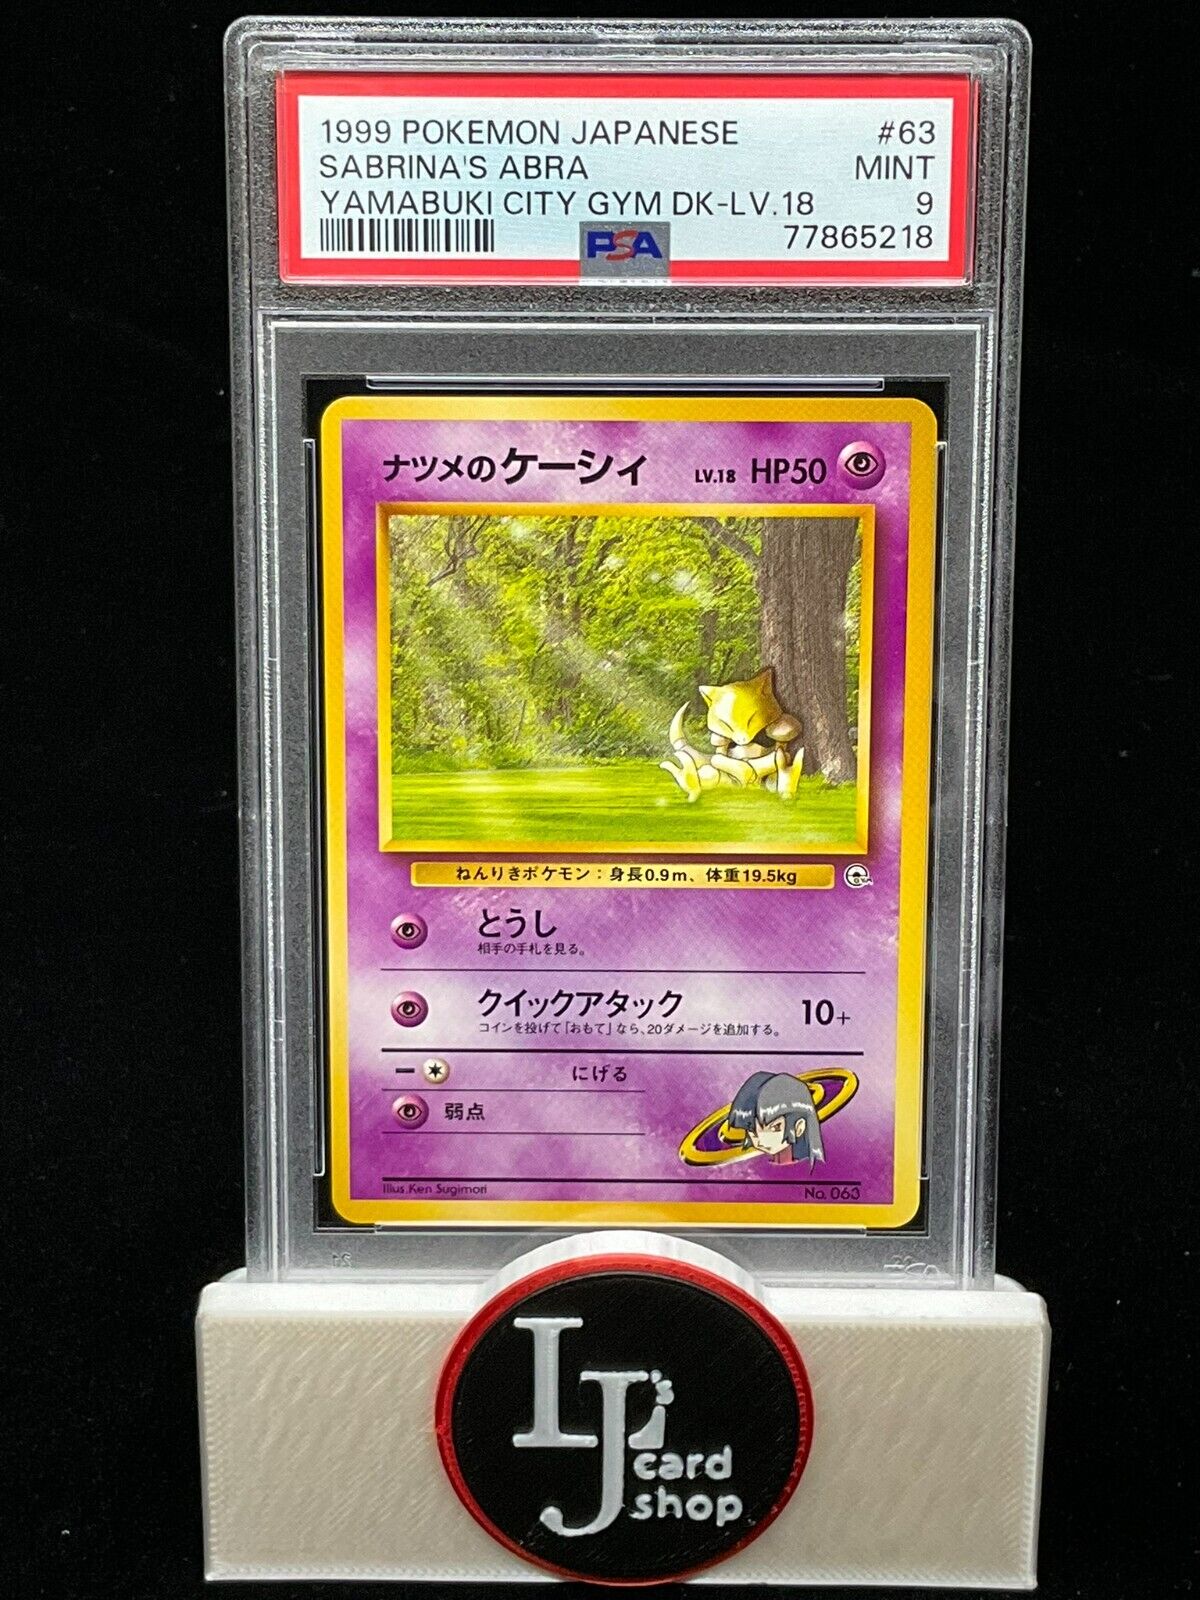 1999 Pokemon Japanese Sabrina's Abra #63 Yamabuki City Gym DK-LV 18 PSA 9 CJC